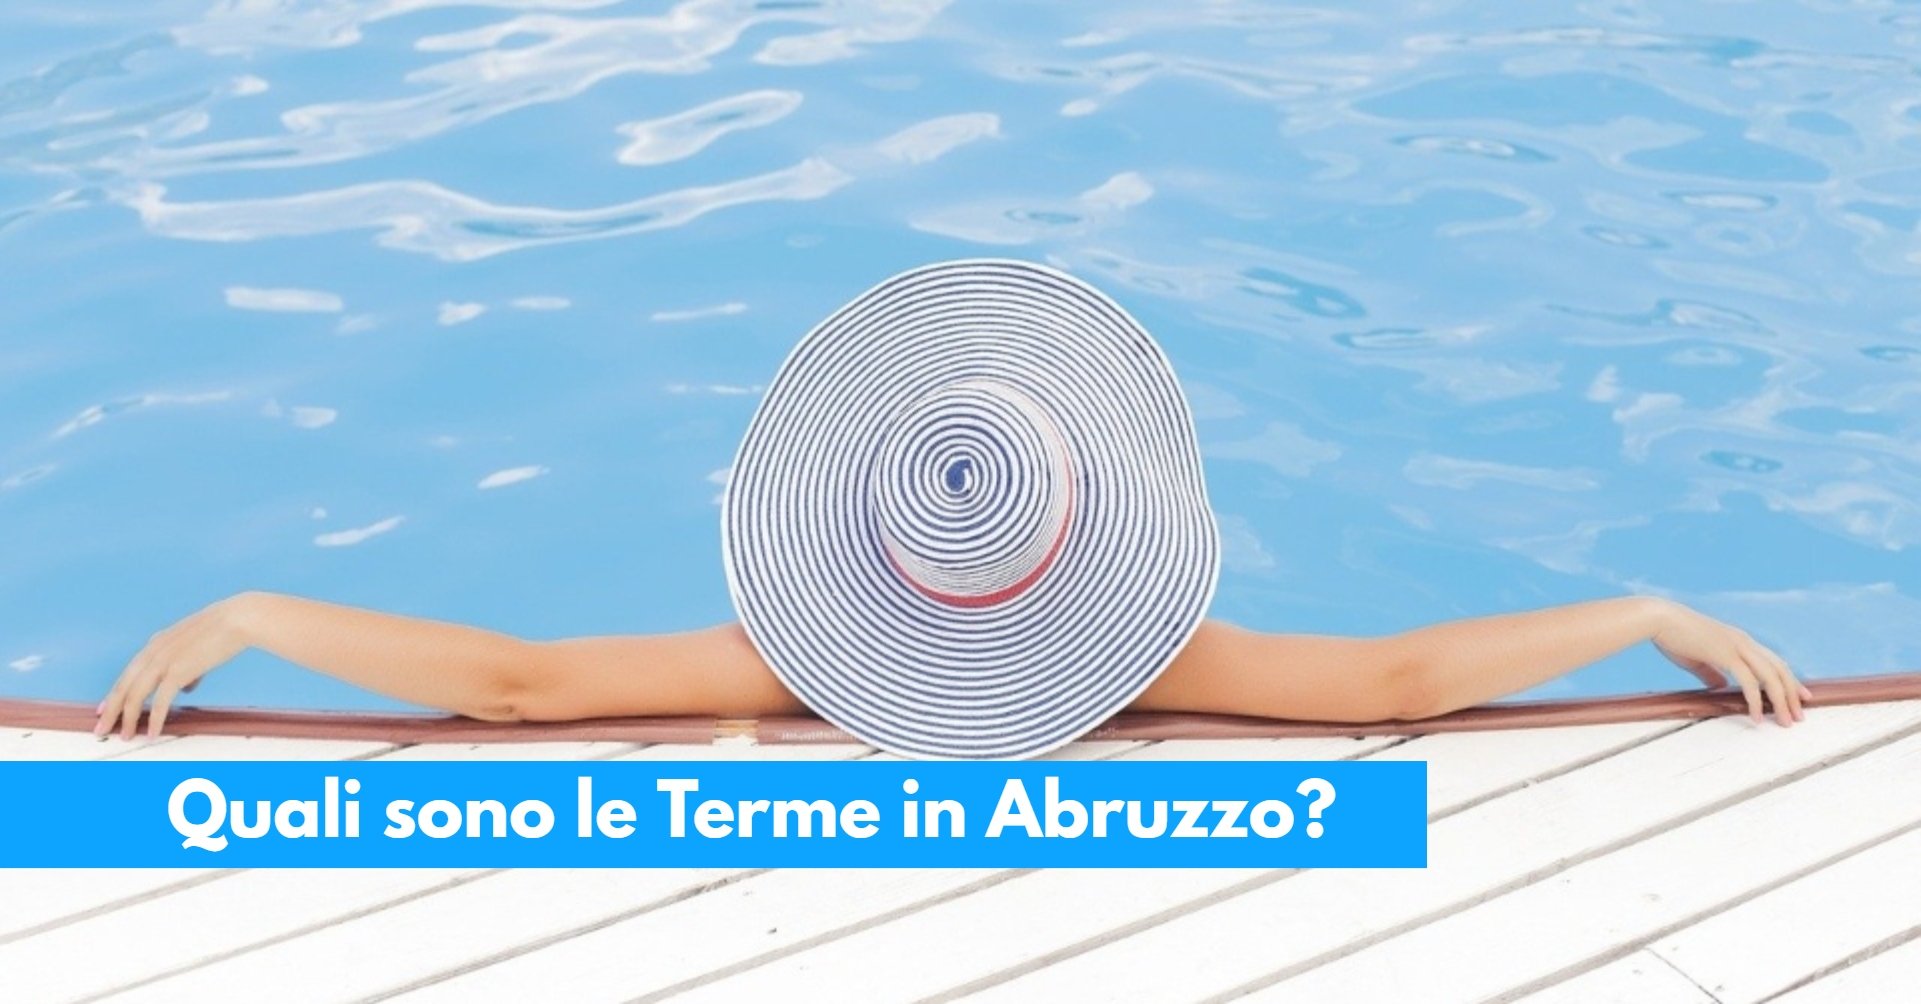 Quali sono le Terme in Abruzzo_ Ecco l’elenco completo, costi e dettagli